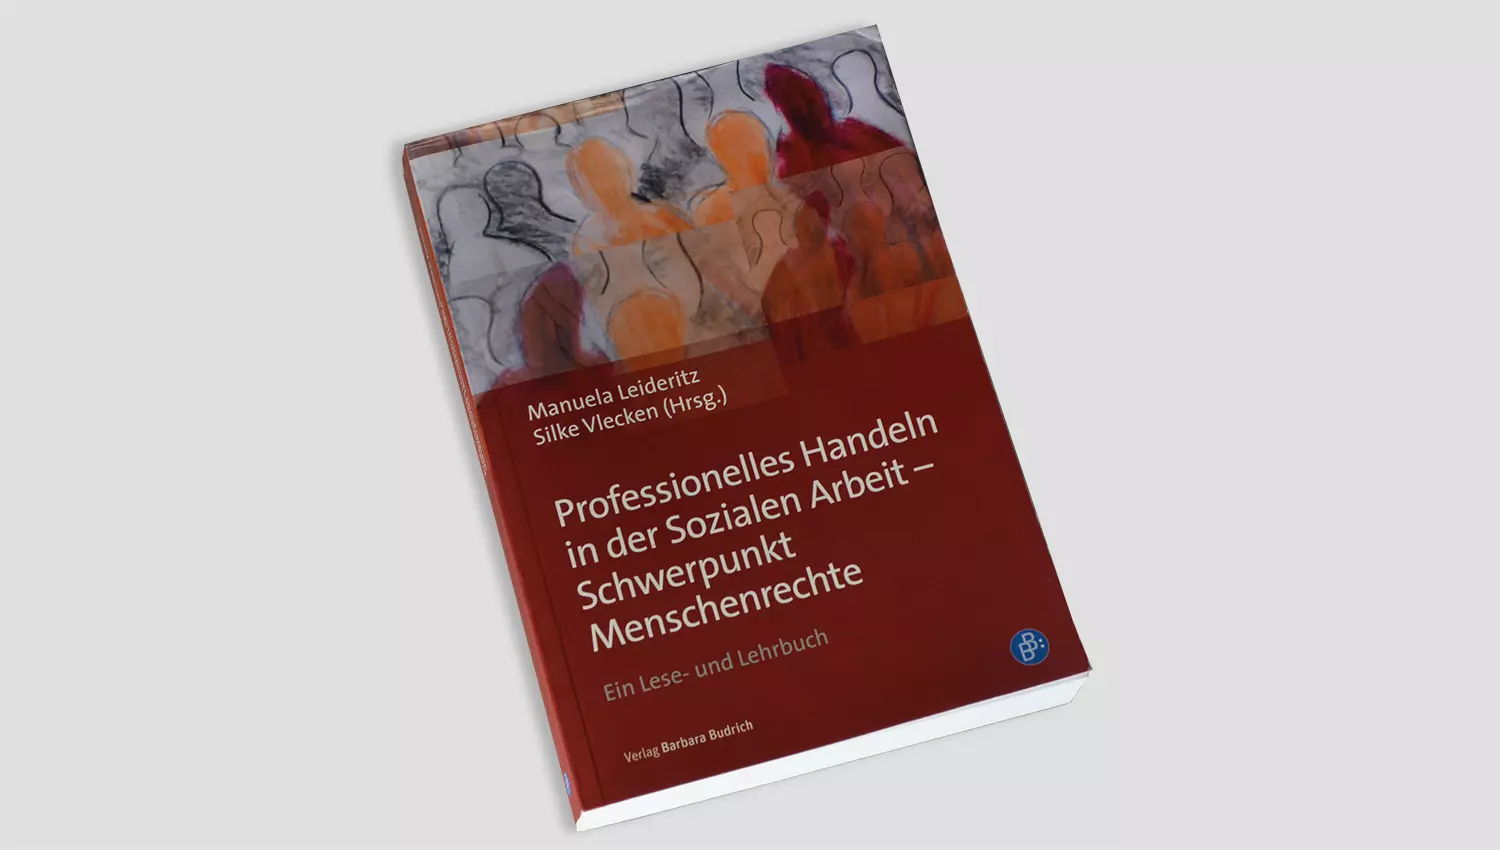 Buch «Professionelles Handeln in der Sozialen Arbeit - Schwerpunkt Menschrechte» von Manuela Leideritz und Silke Vlecken (Hrsg.)